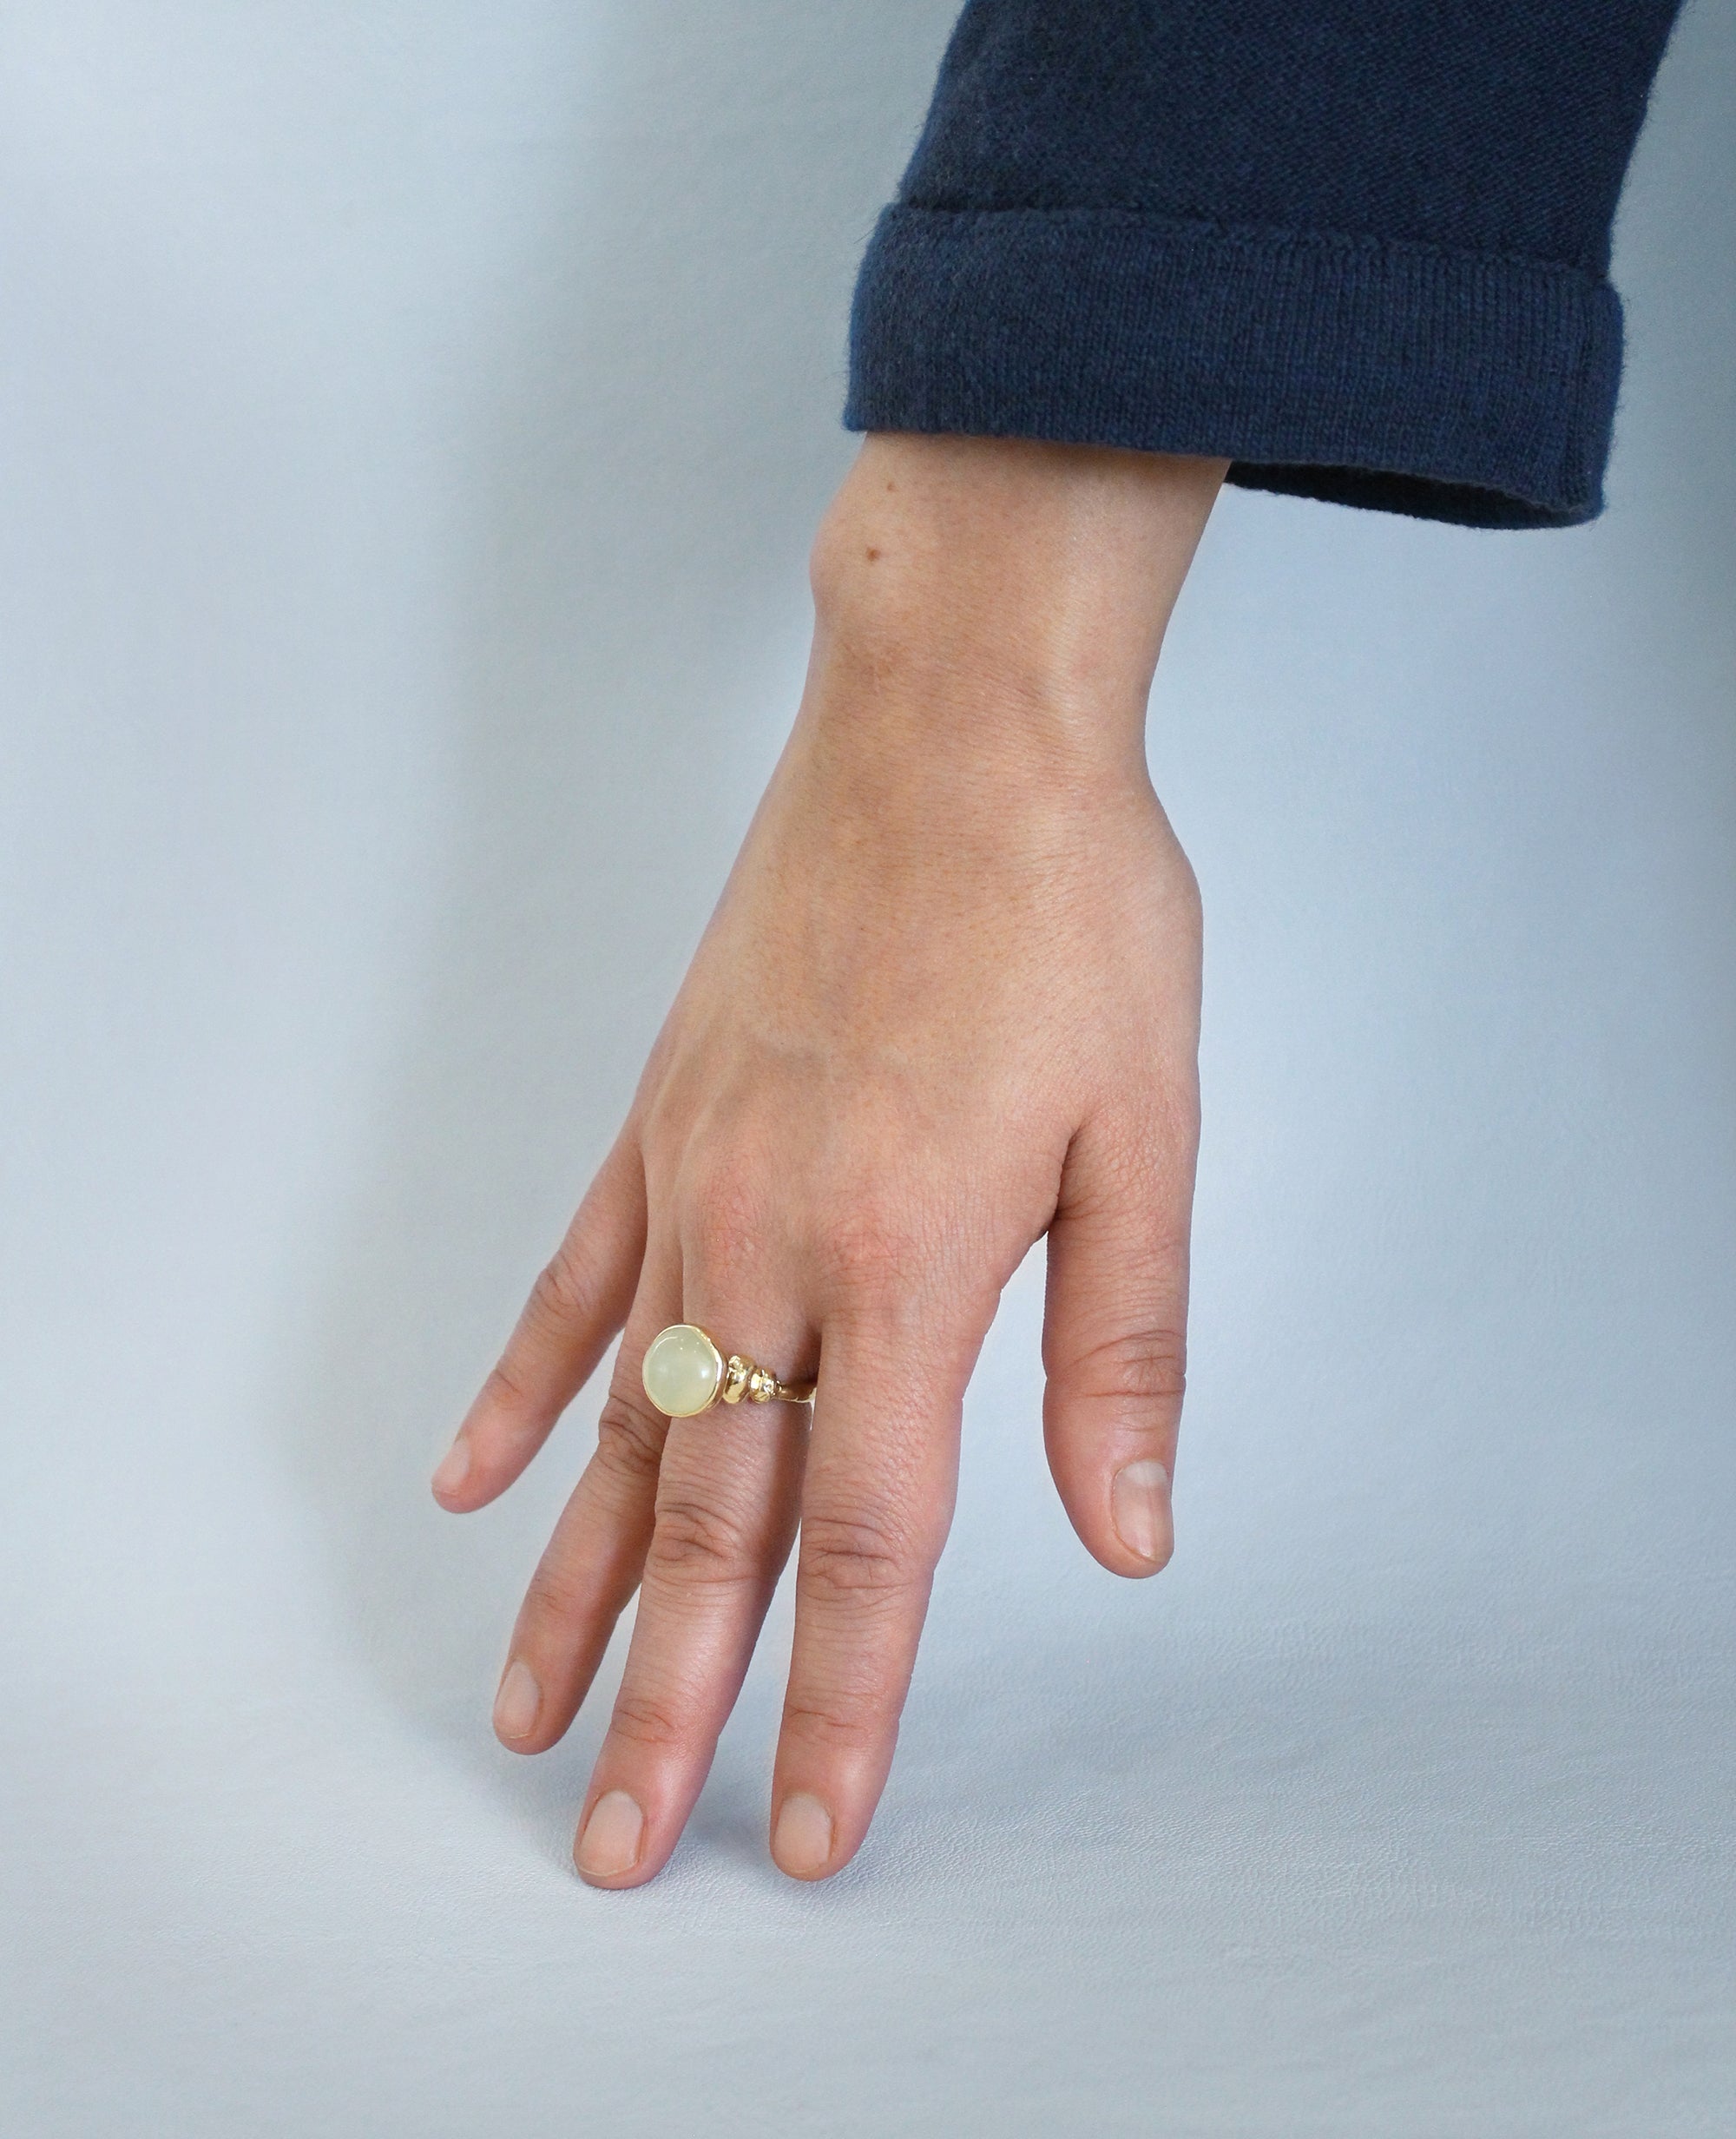 SOLARI // bague en or - ORA-C jewelry - bijoux faits à la main par Caroline Pham, designer indépendante basée à Montréal